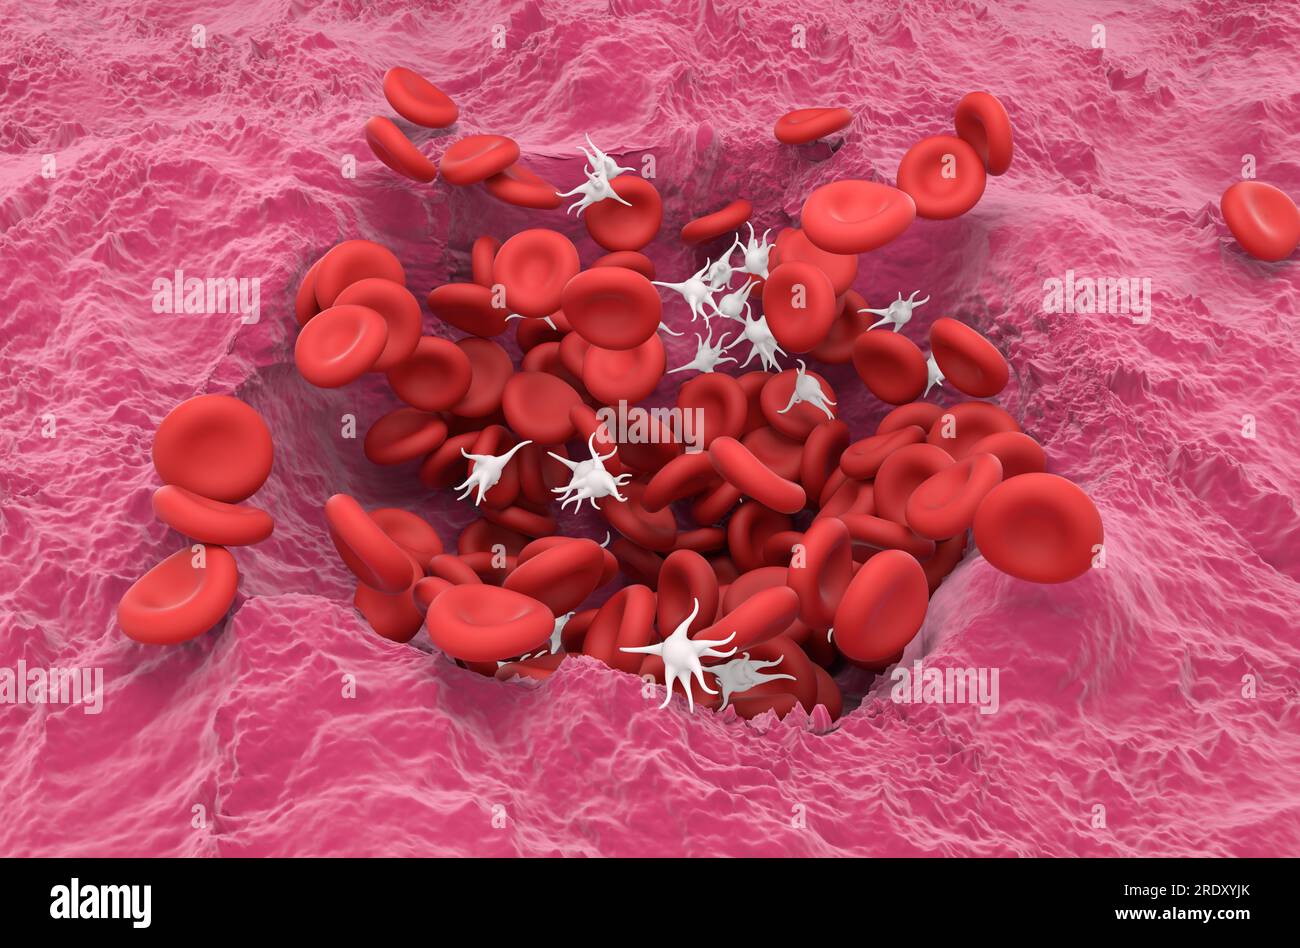 Erythrozyten und Thrombozyten in der heilenden Wunde - isometrische 3D-Darstellung Stockfoto